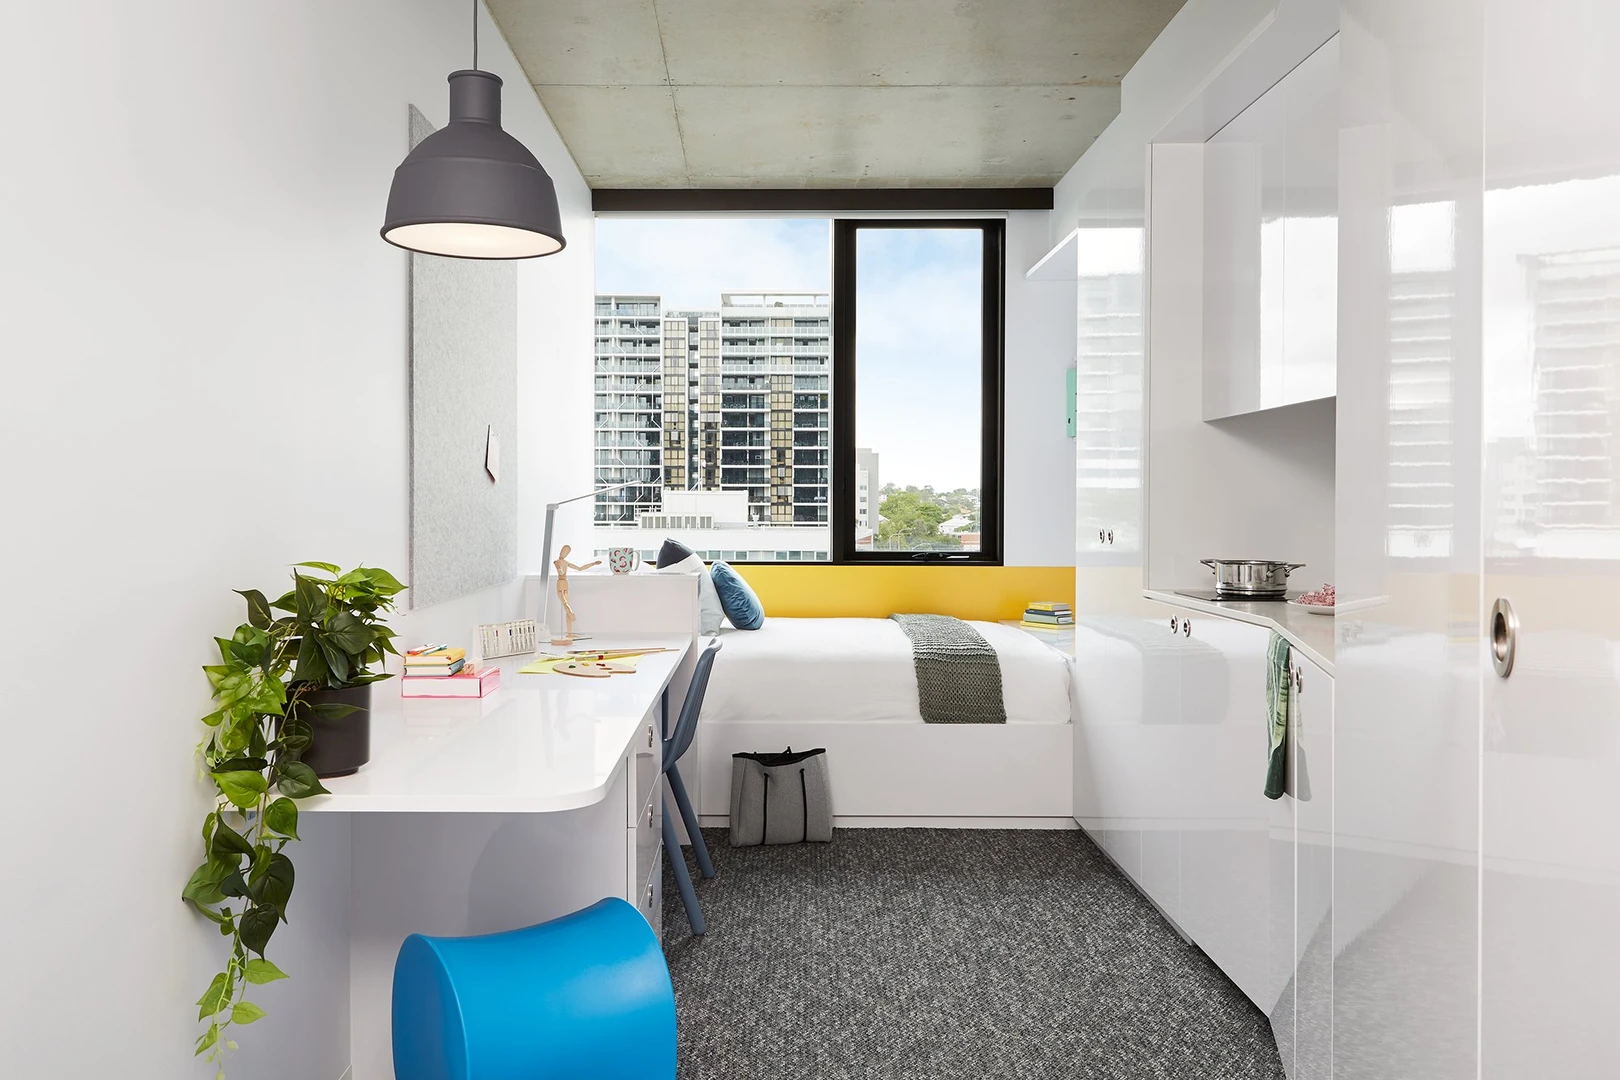 Brisbane de çift kişilik yataklı kiralık oda